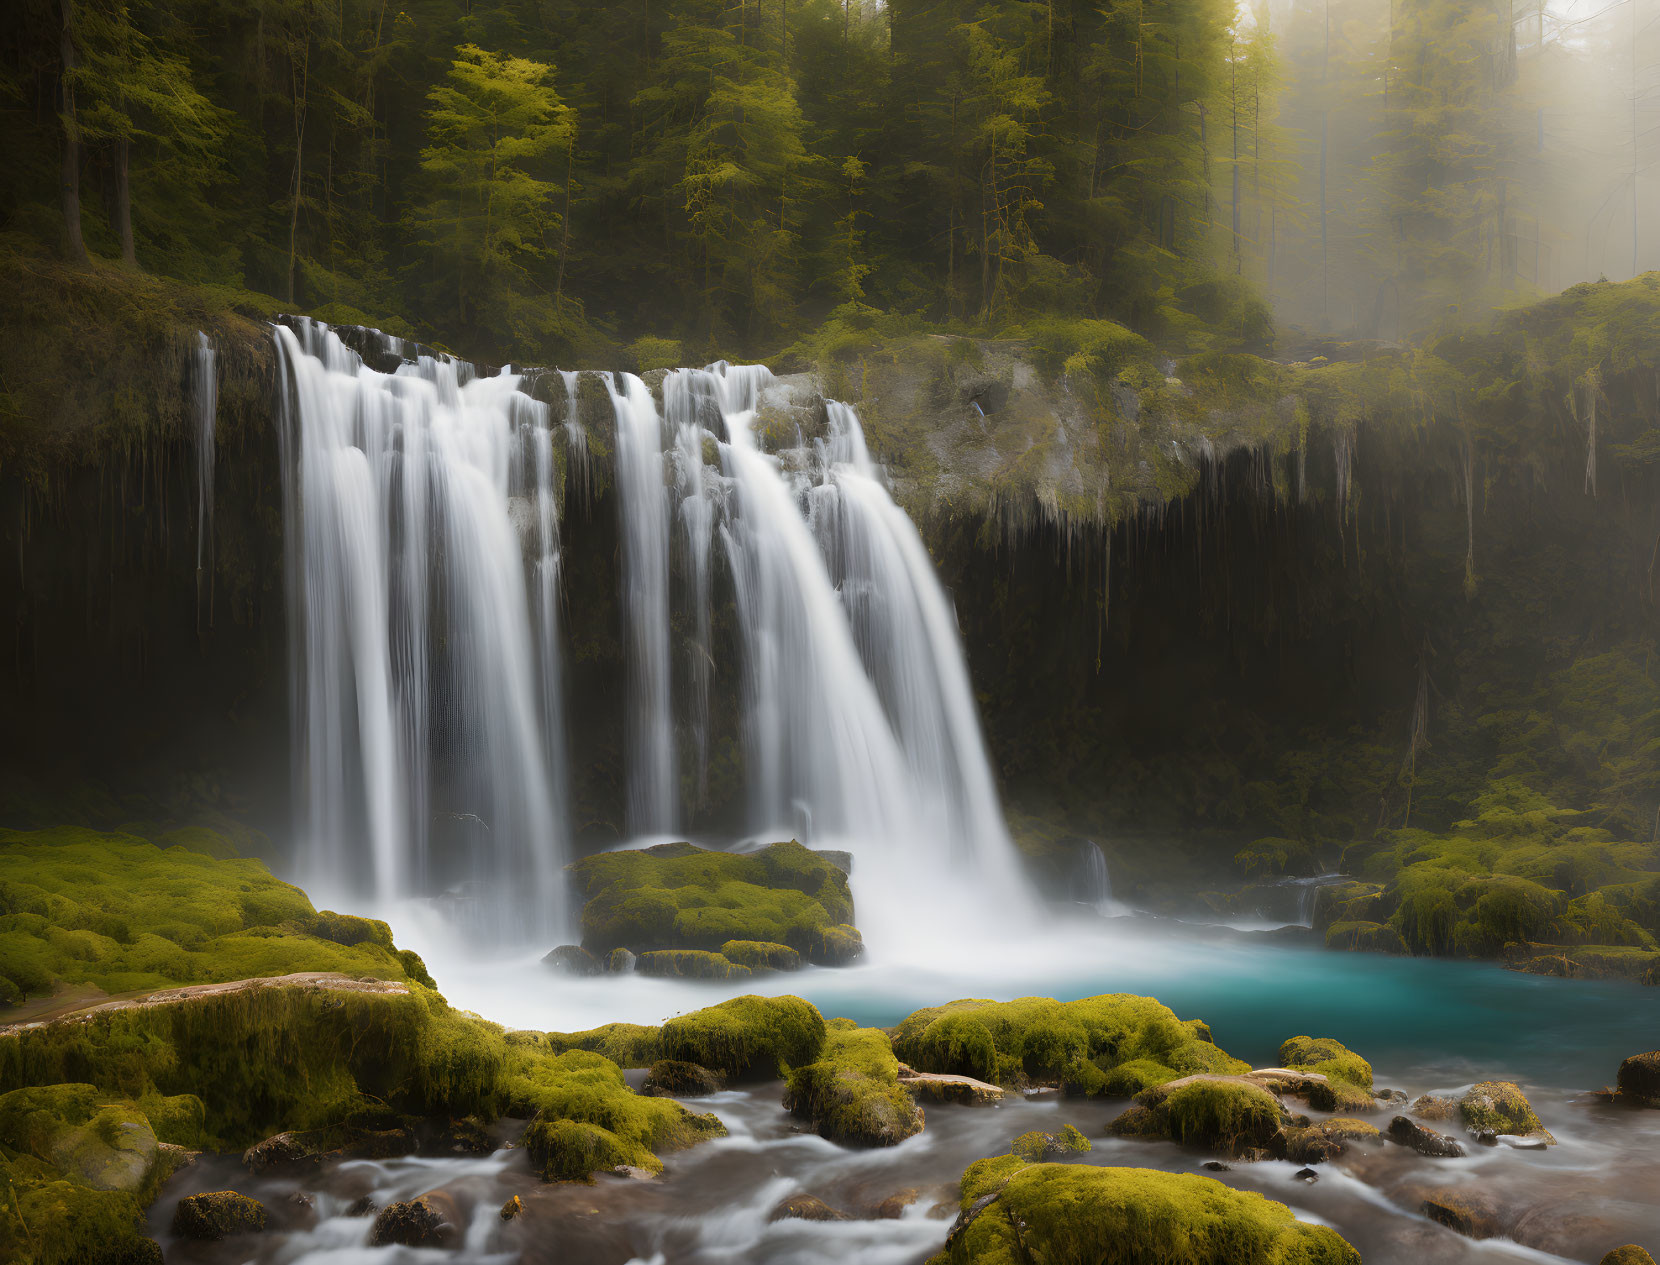 A Relaxing Waterfall